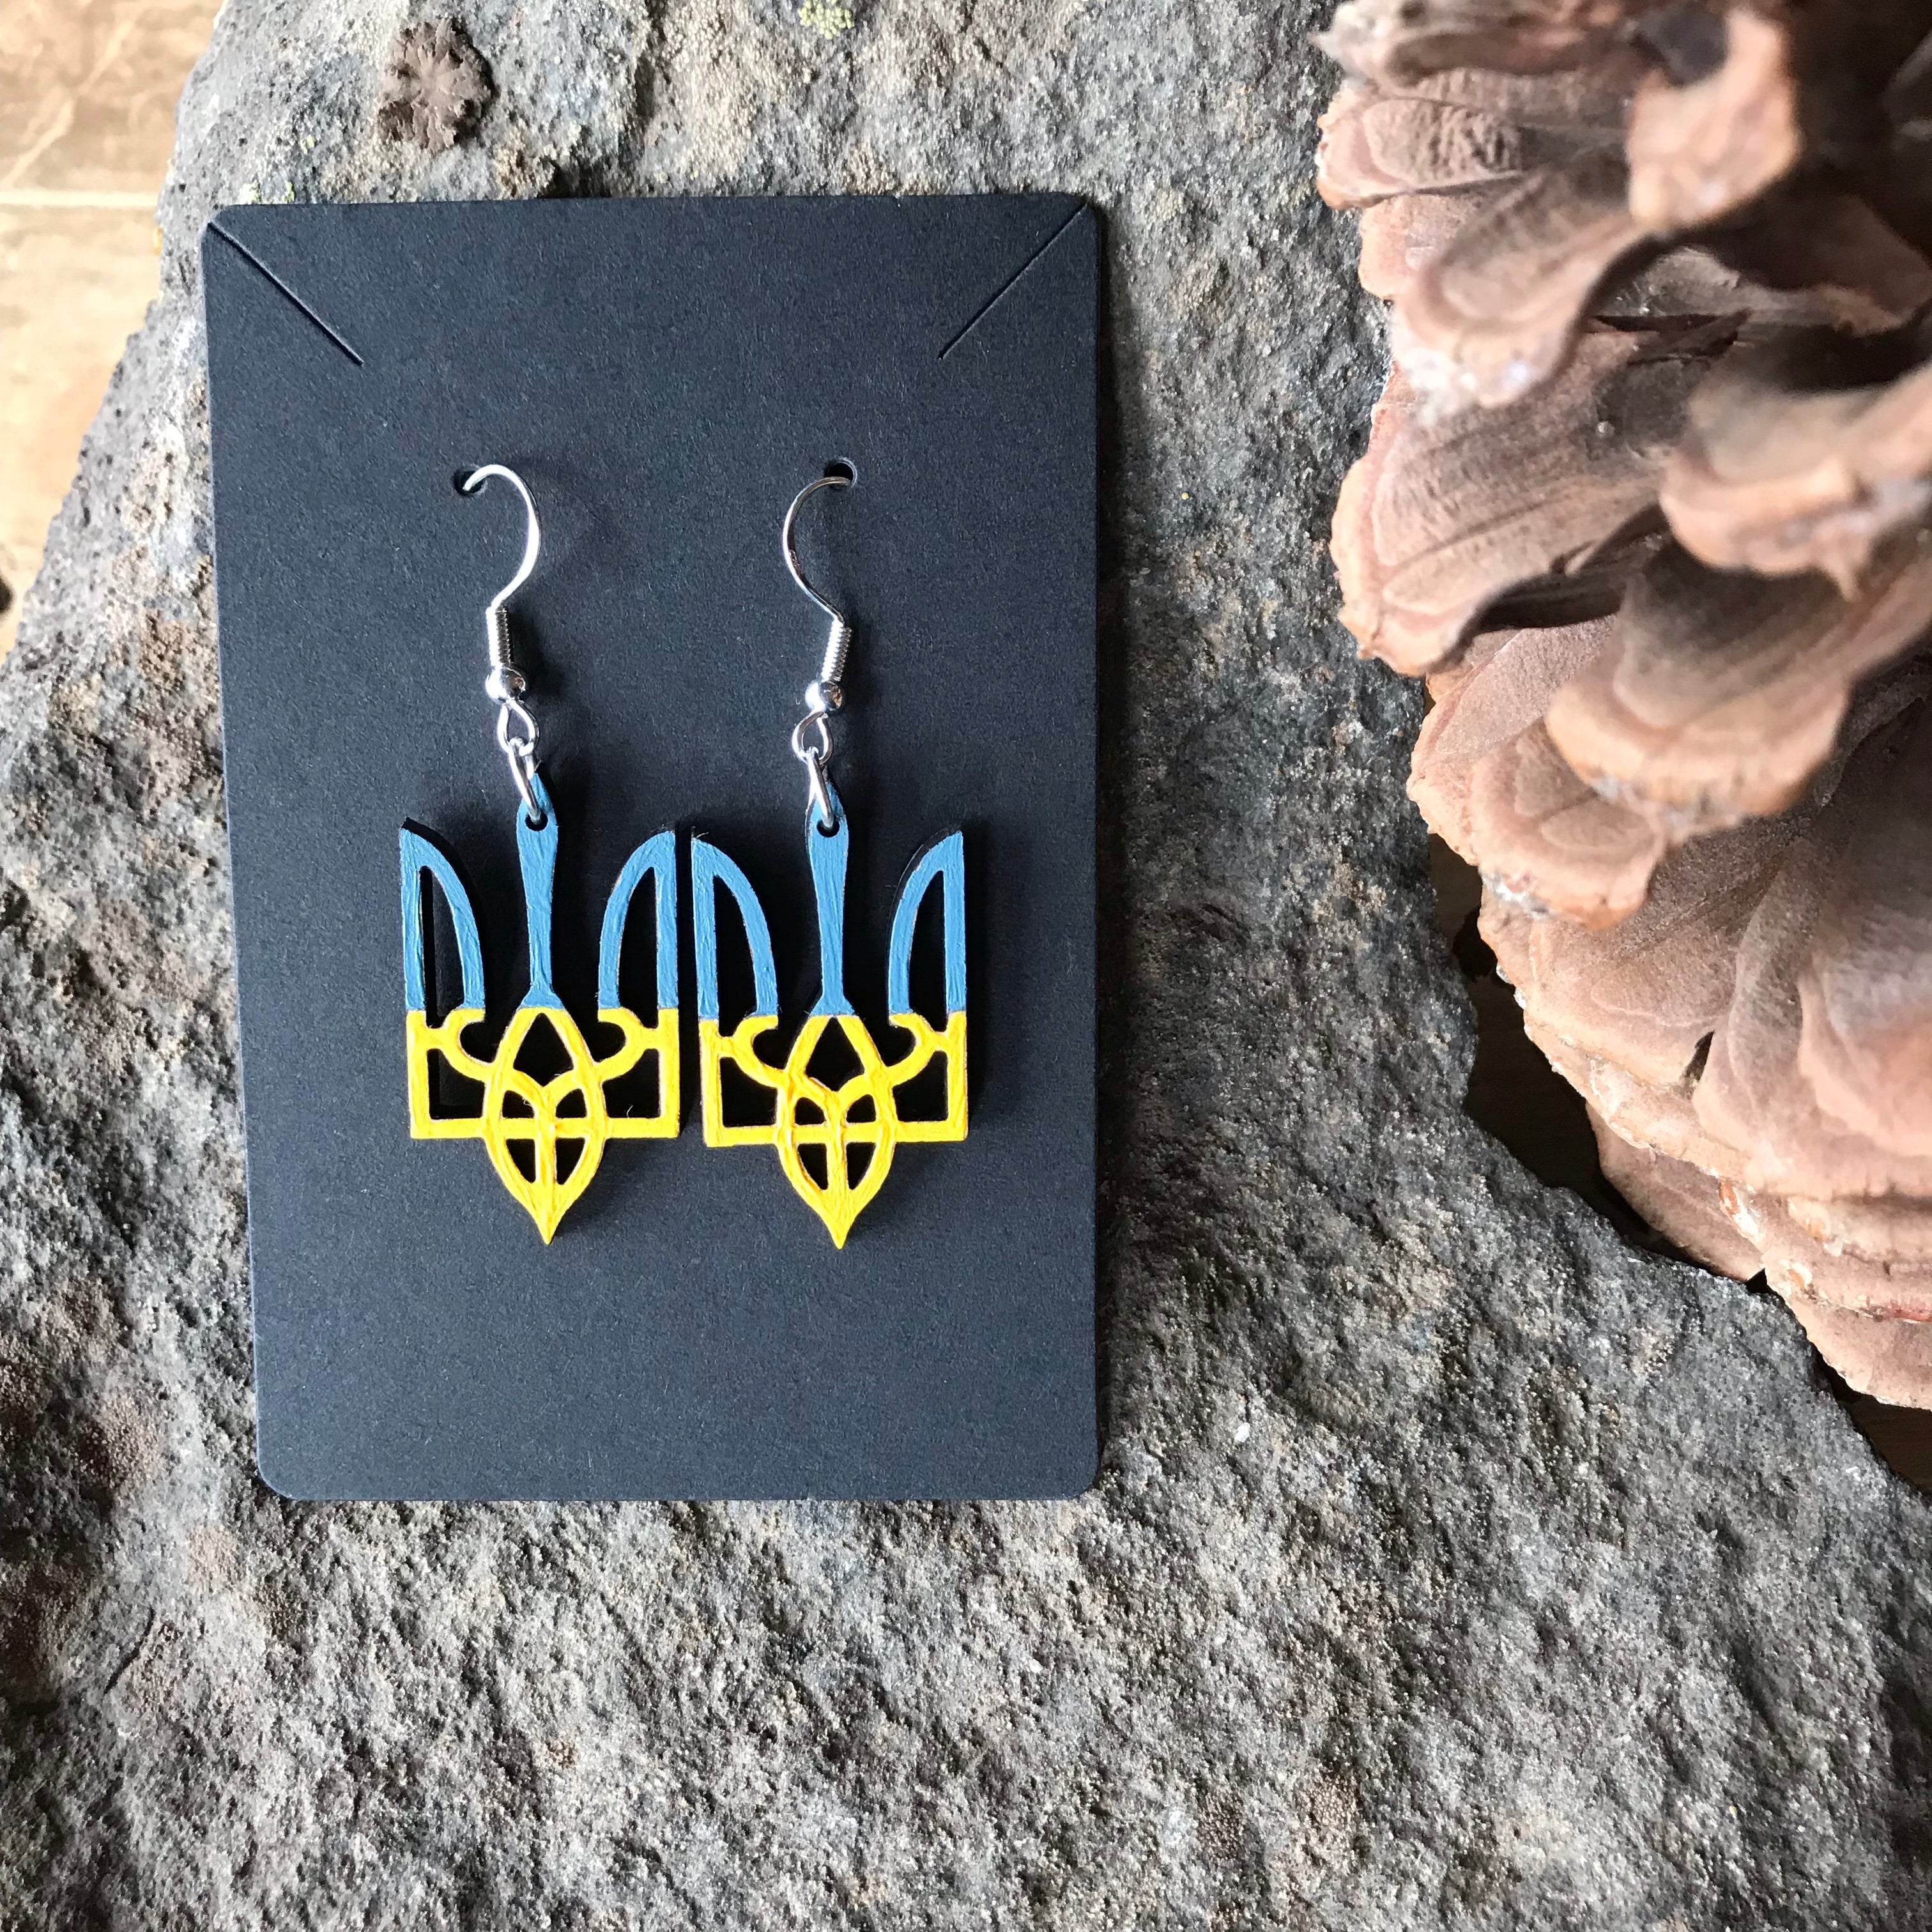 Bestseller - Support Ukraine Trident Dangle Earrings